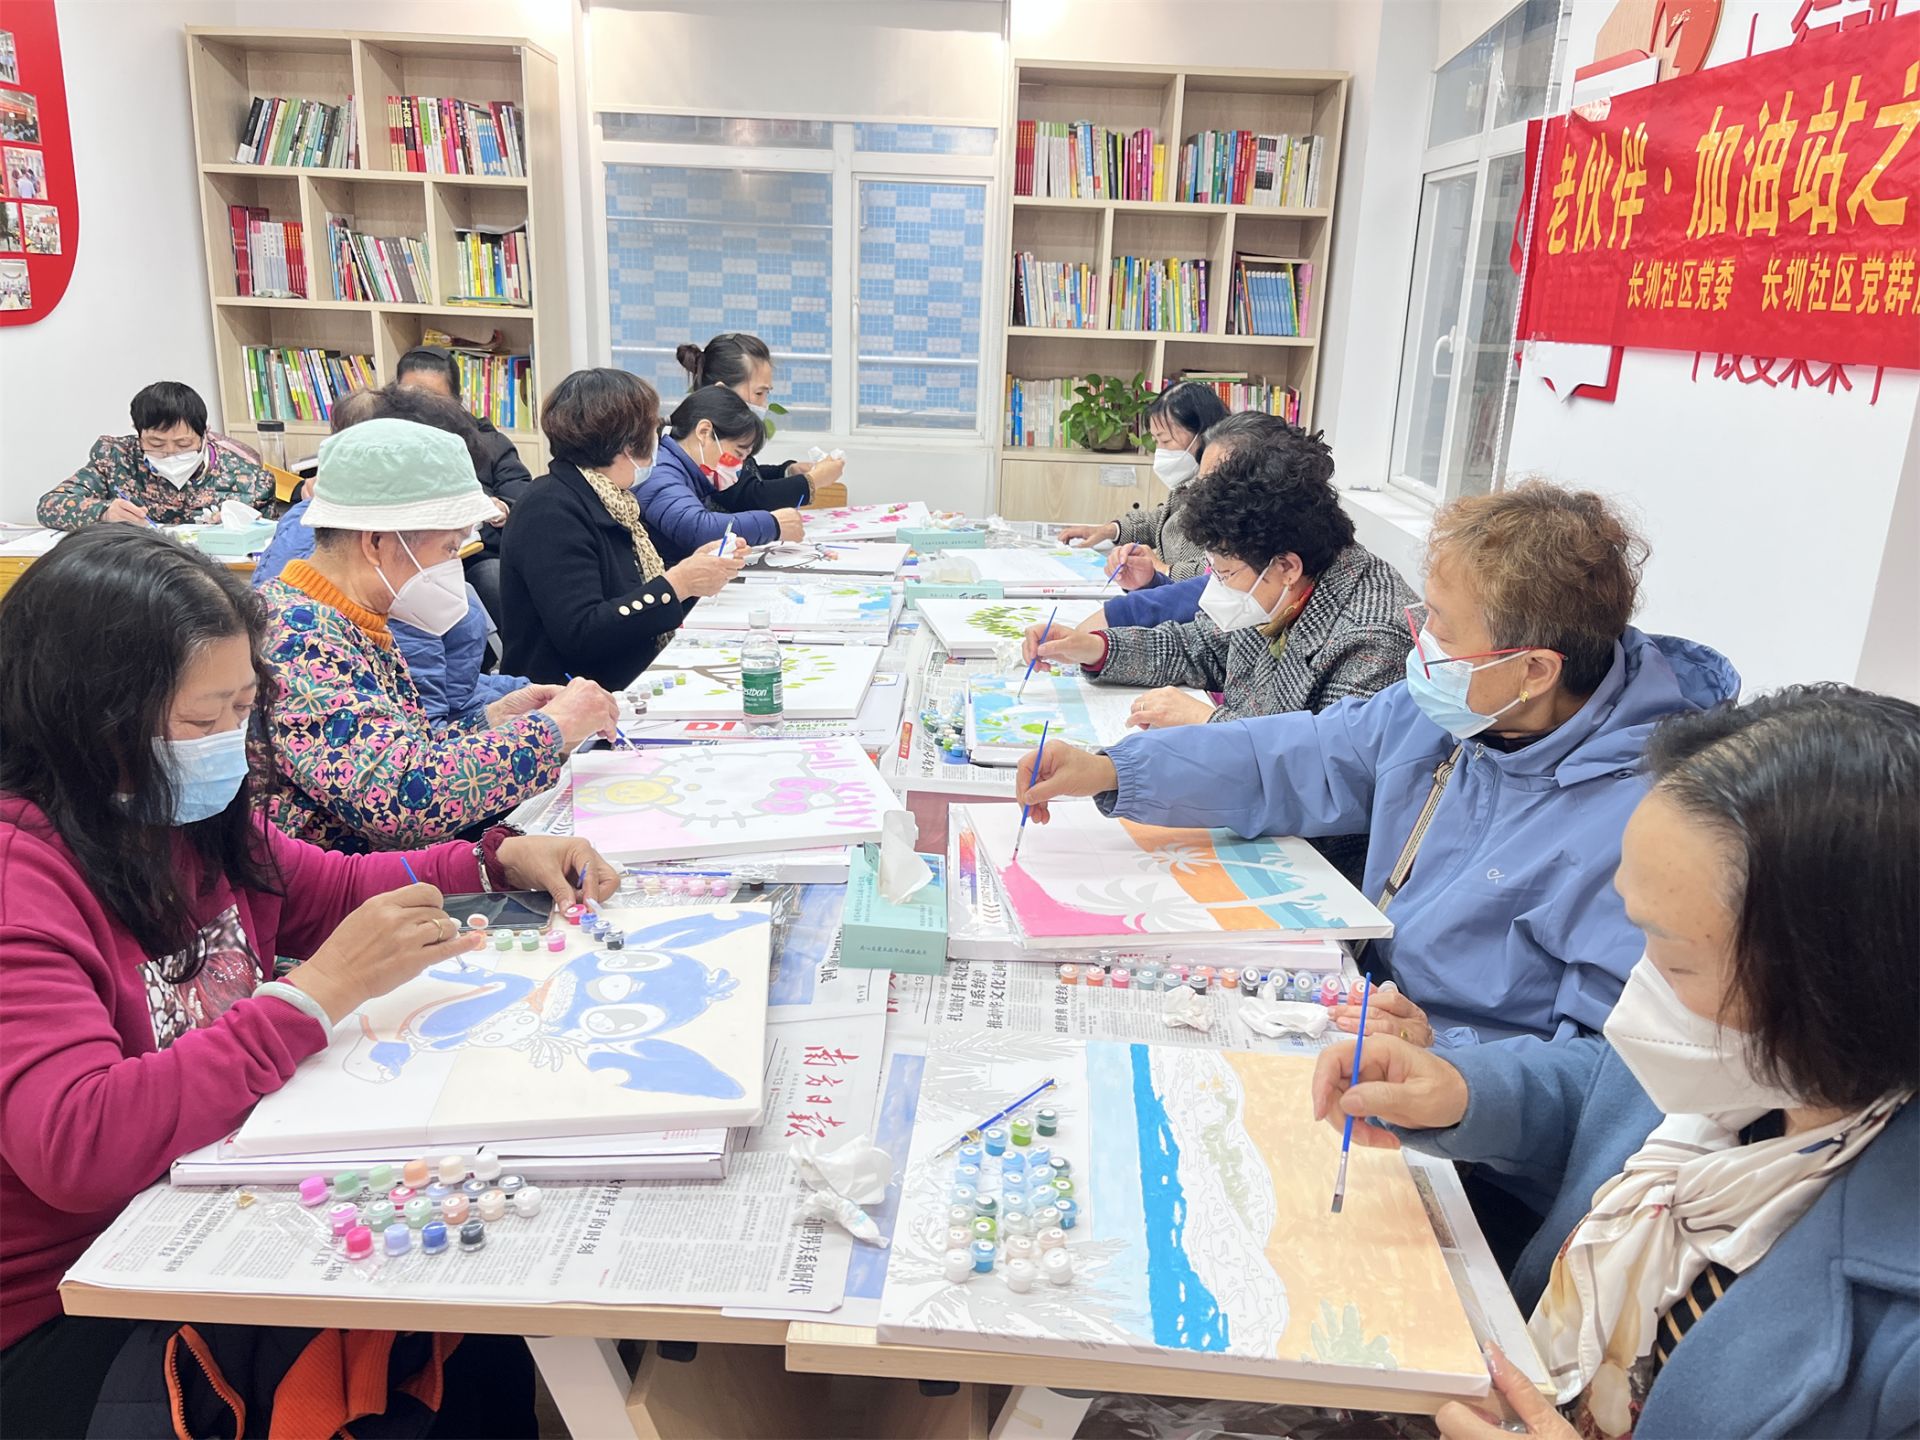 玉塘街道长圳社区推出长者绘画兴趣学堂